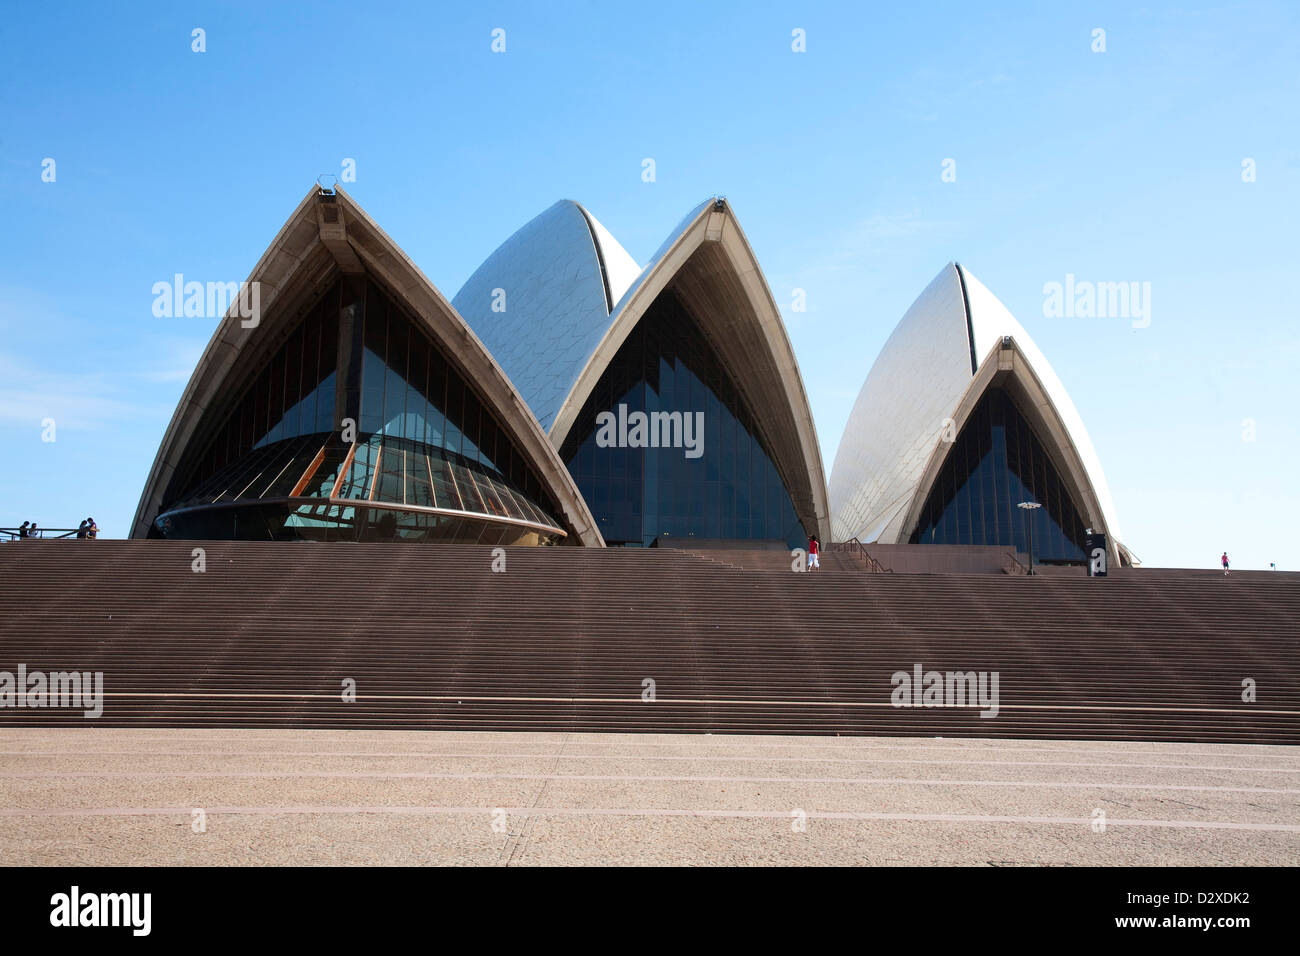 Mattina immagine delle fasi in corrispondenza della parte anteriore della Opera House di Sydney Australia Foto Stock